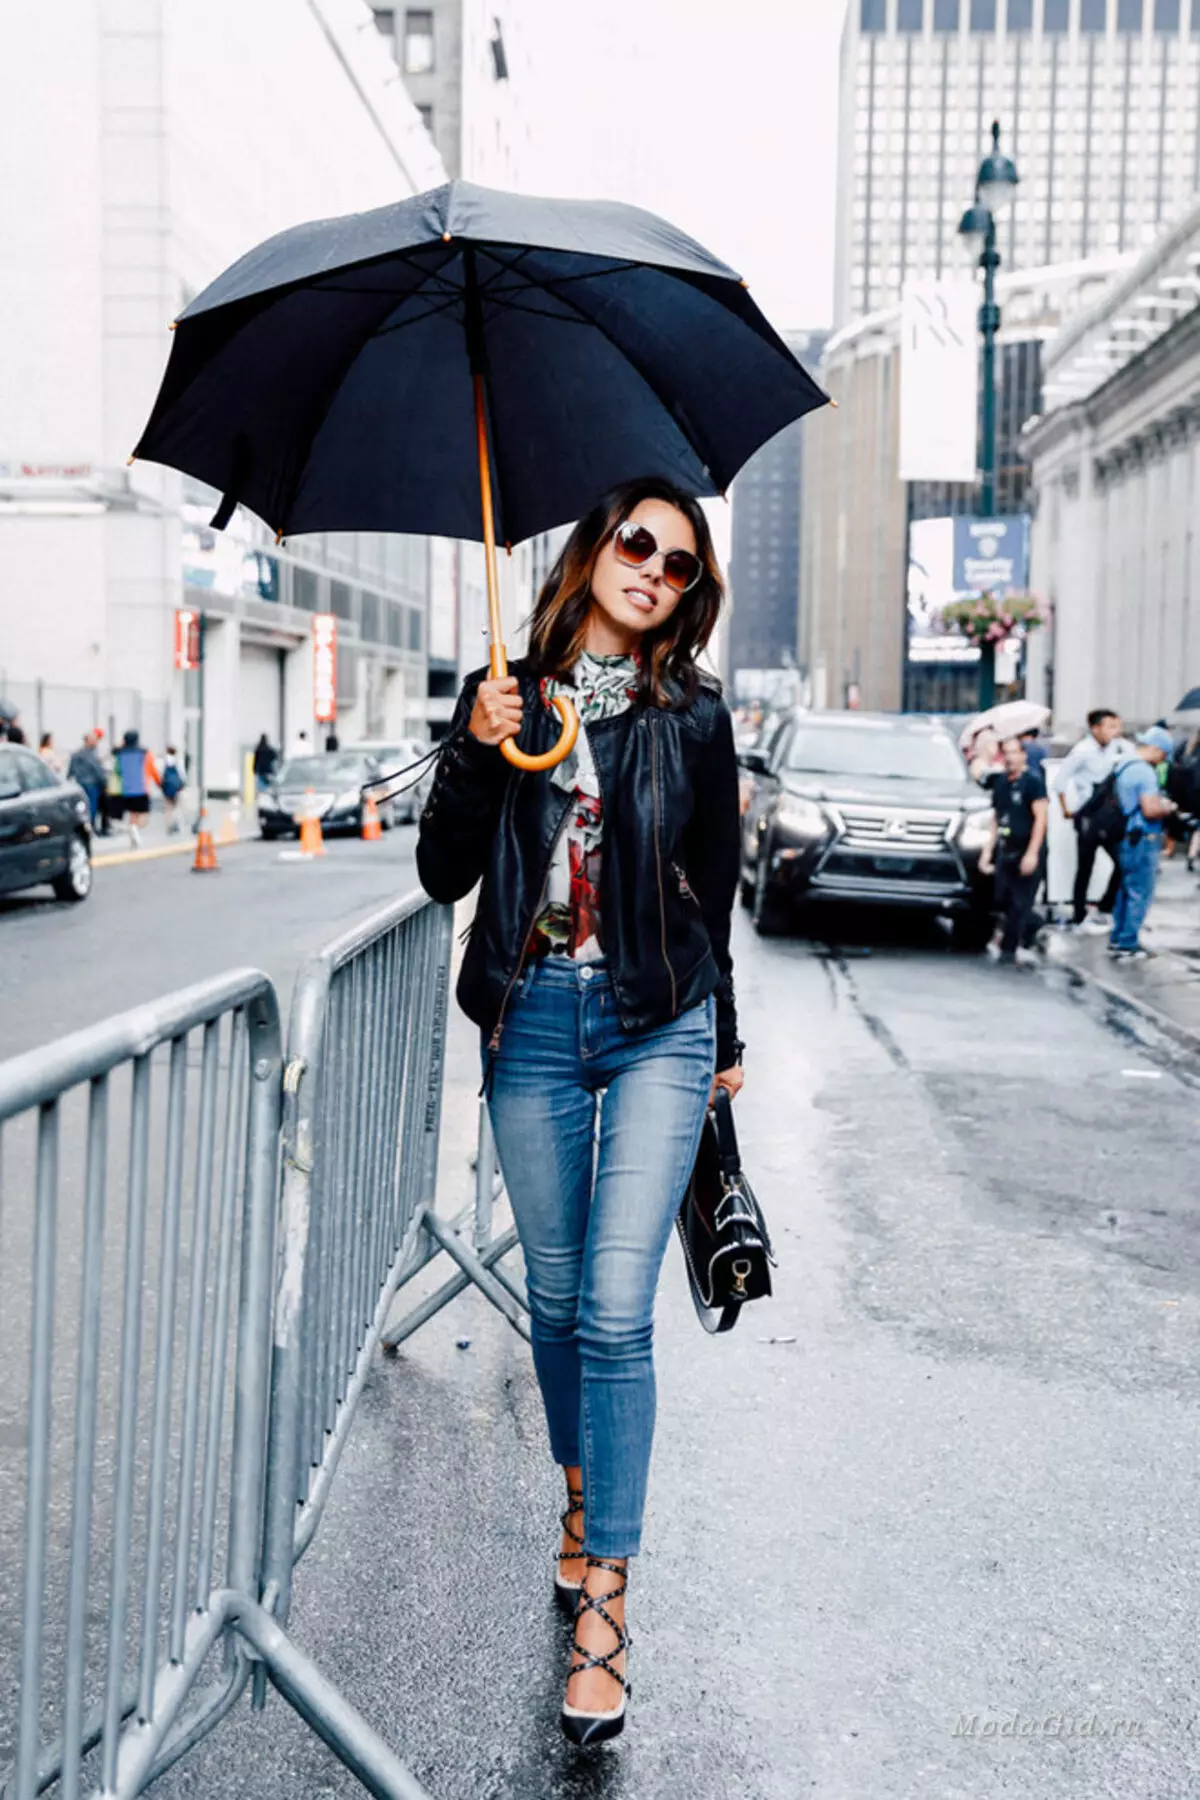 15 градусов как одеваться. Образы с зонтом. Стильный образ с зонтом. Образ в дождливую погоду. Стильно одеться в дождь.